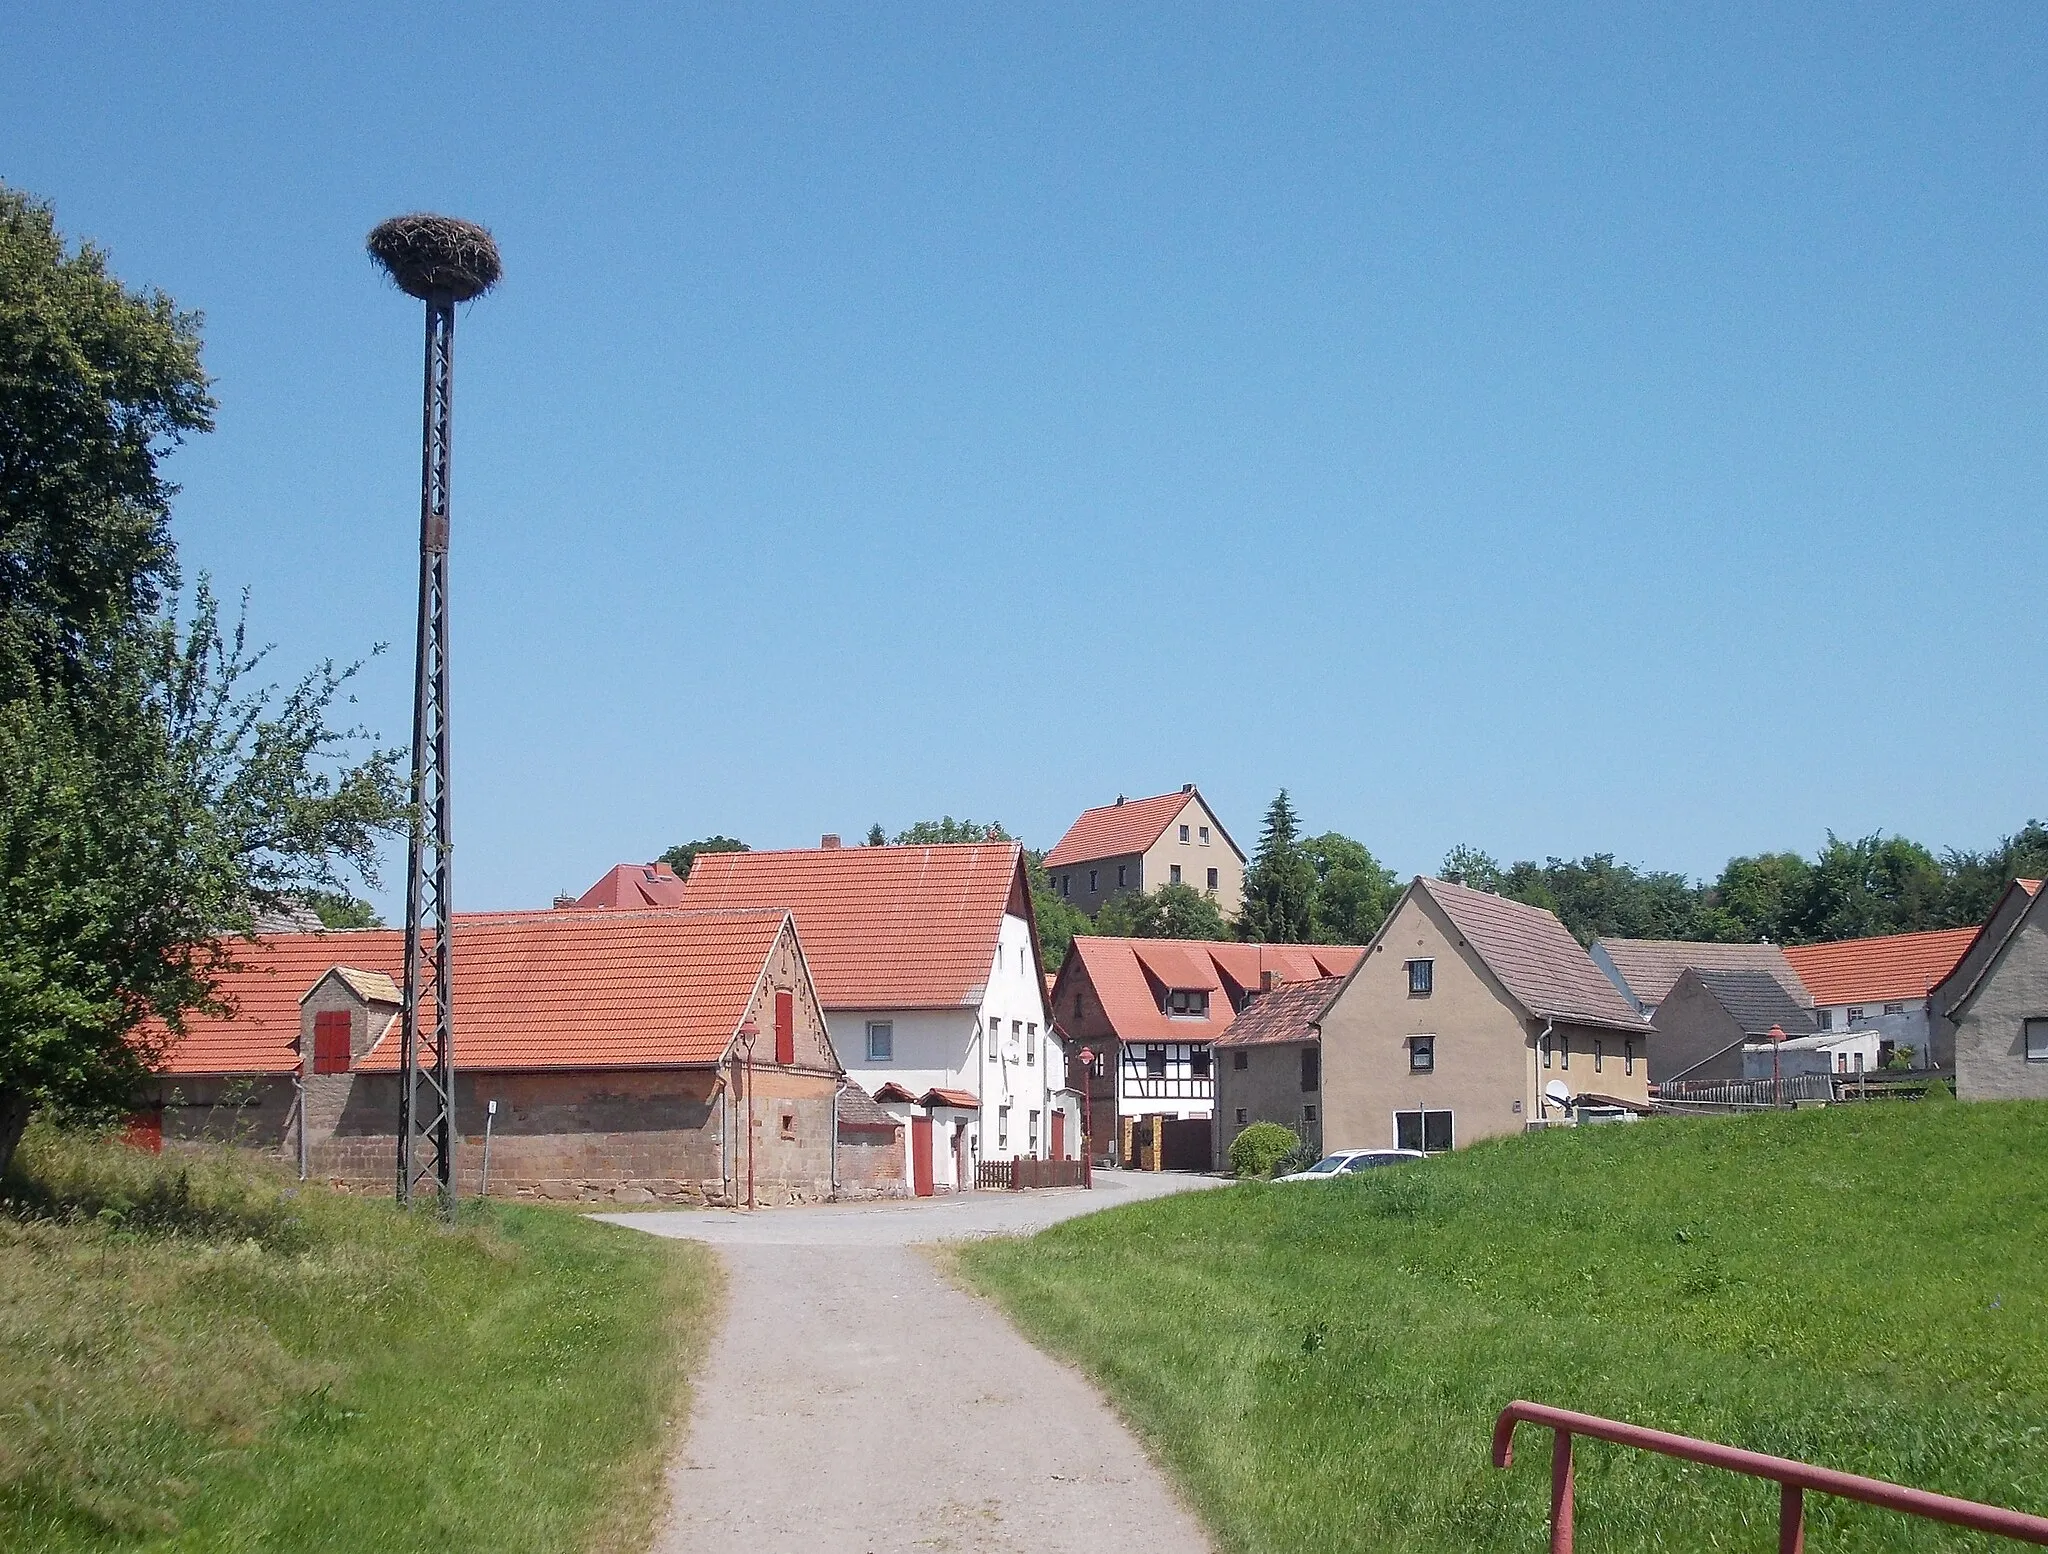 Photo showing: The village of Lobitzsch (Weissenfels, district: Burgenandkreis, Saxony-anhalt) with stork's nest